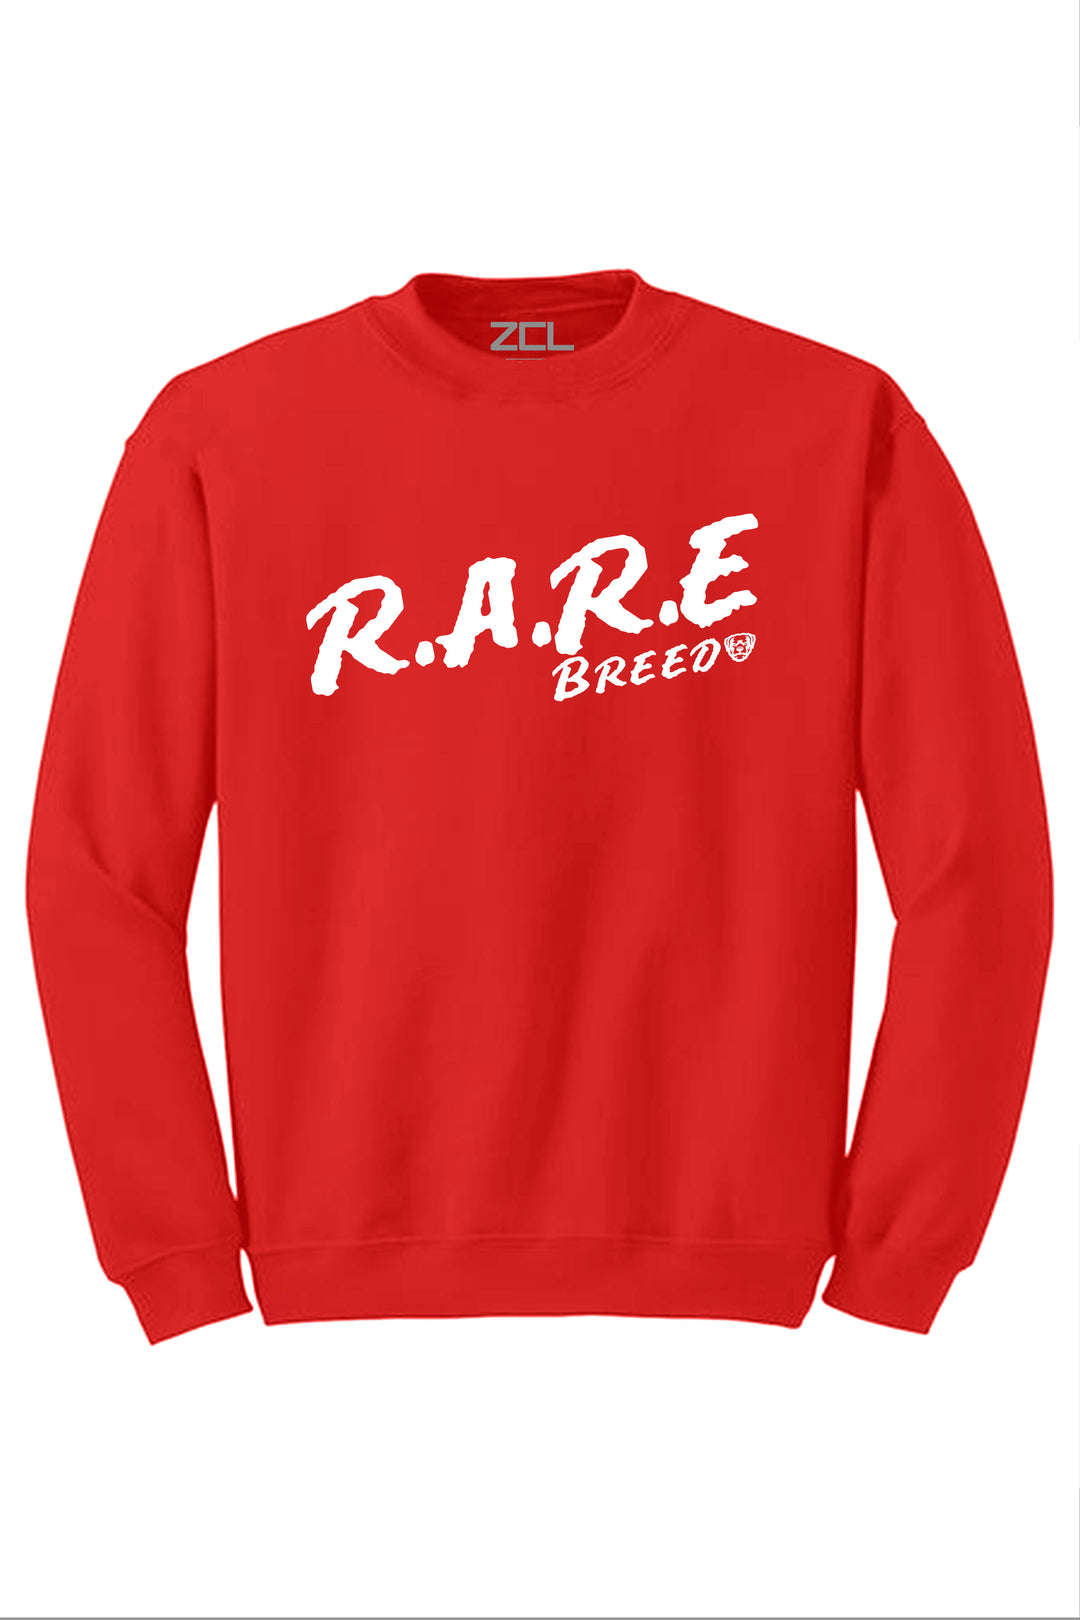 Rare Breed Crewneck Sweatshirt (White Logo) - Zamage